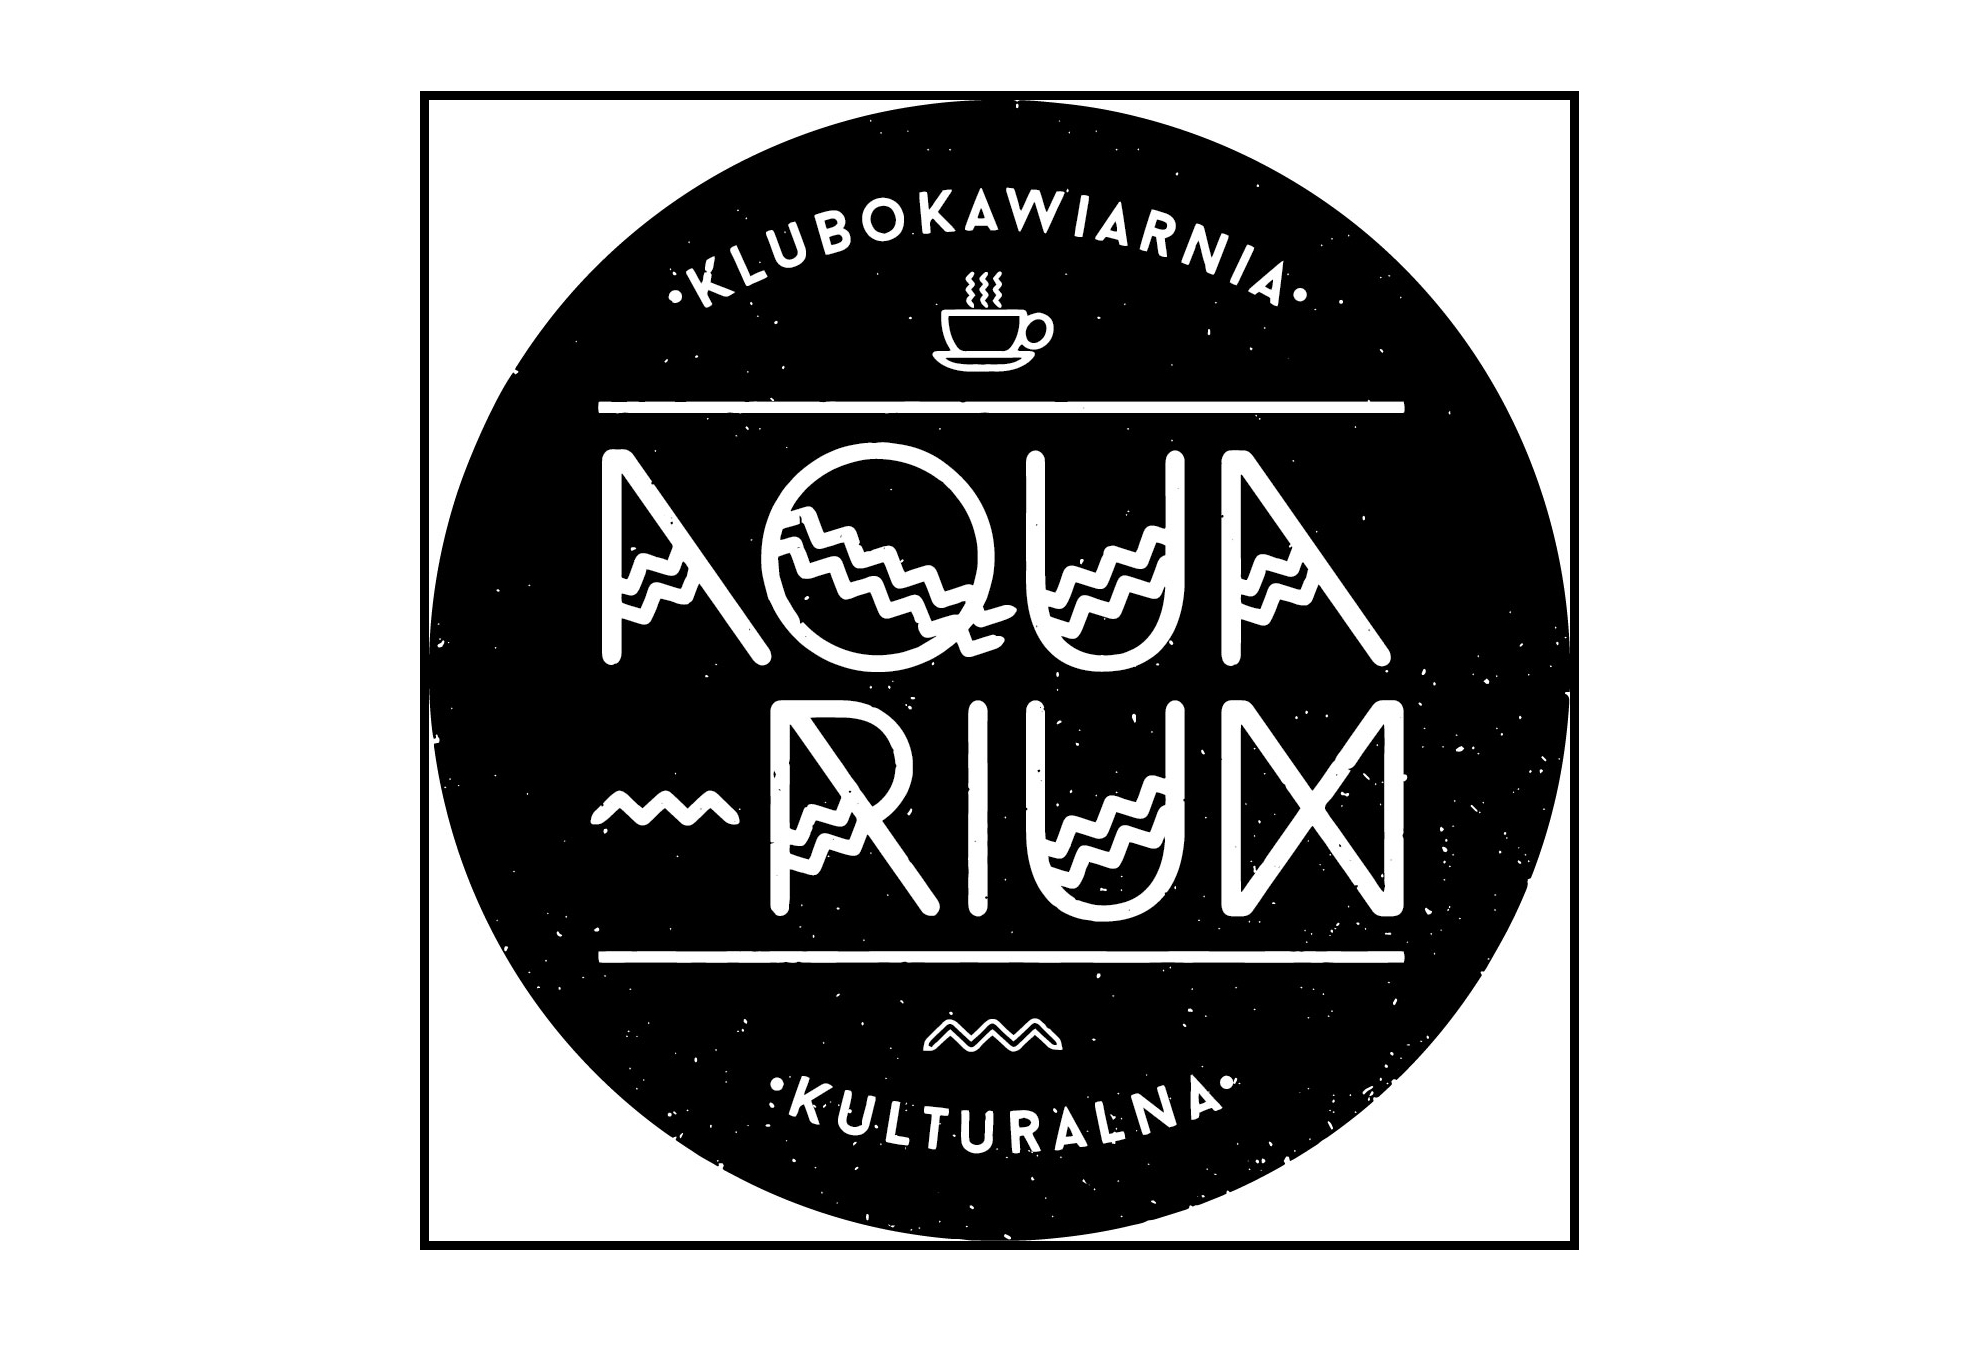  Poezja w Aquarium: Krzysztof Macha, Mxchx - Japońskie poezje Na zdjęciu logo Aquarium